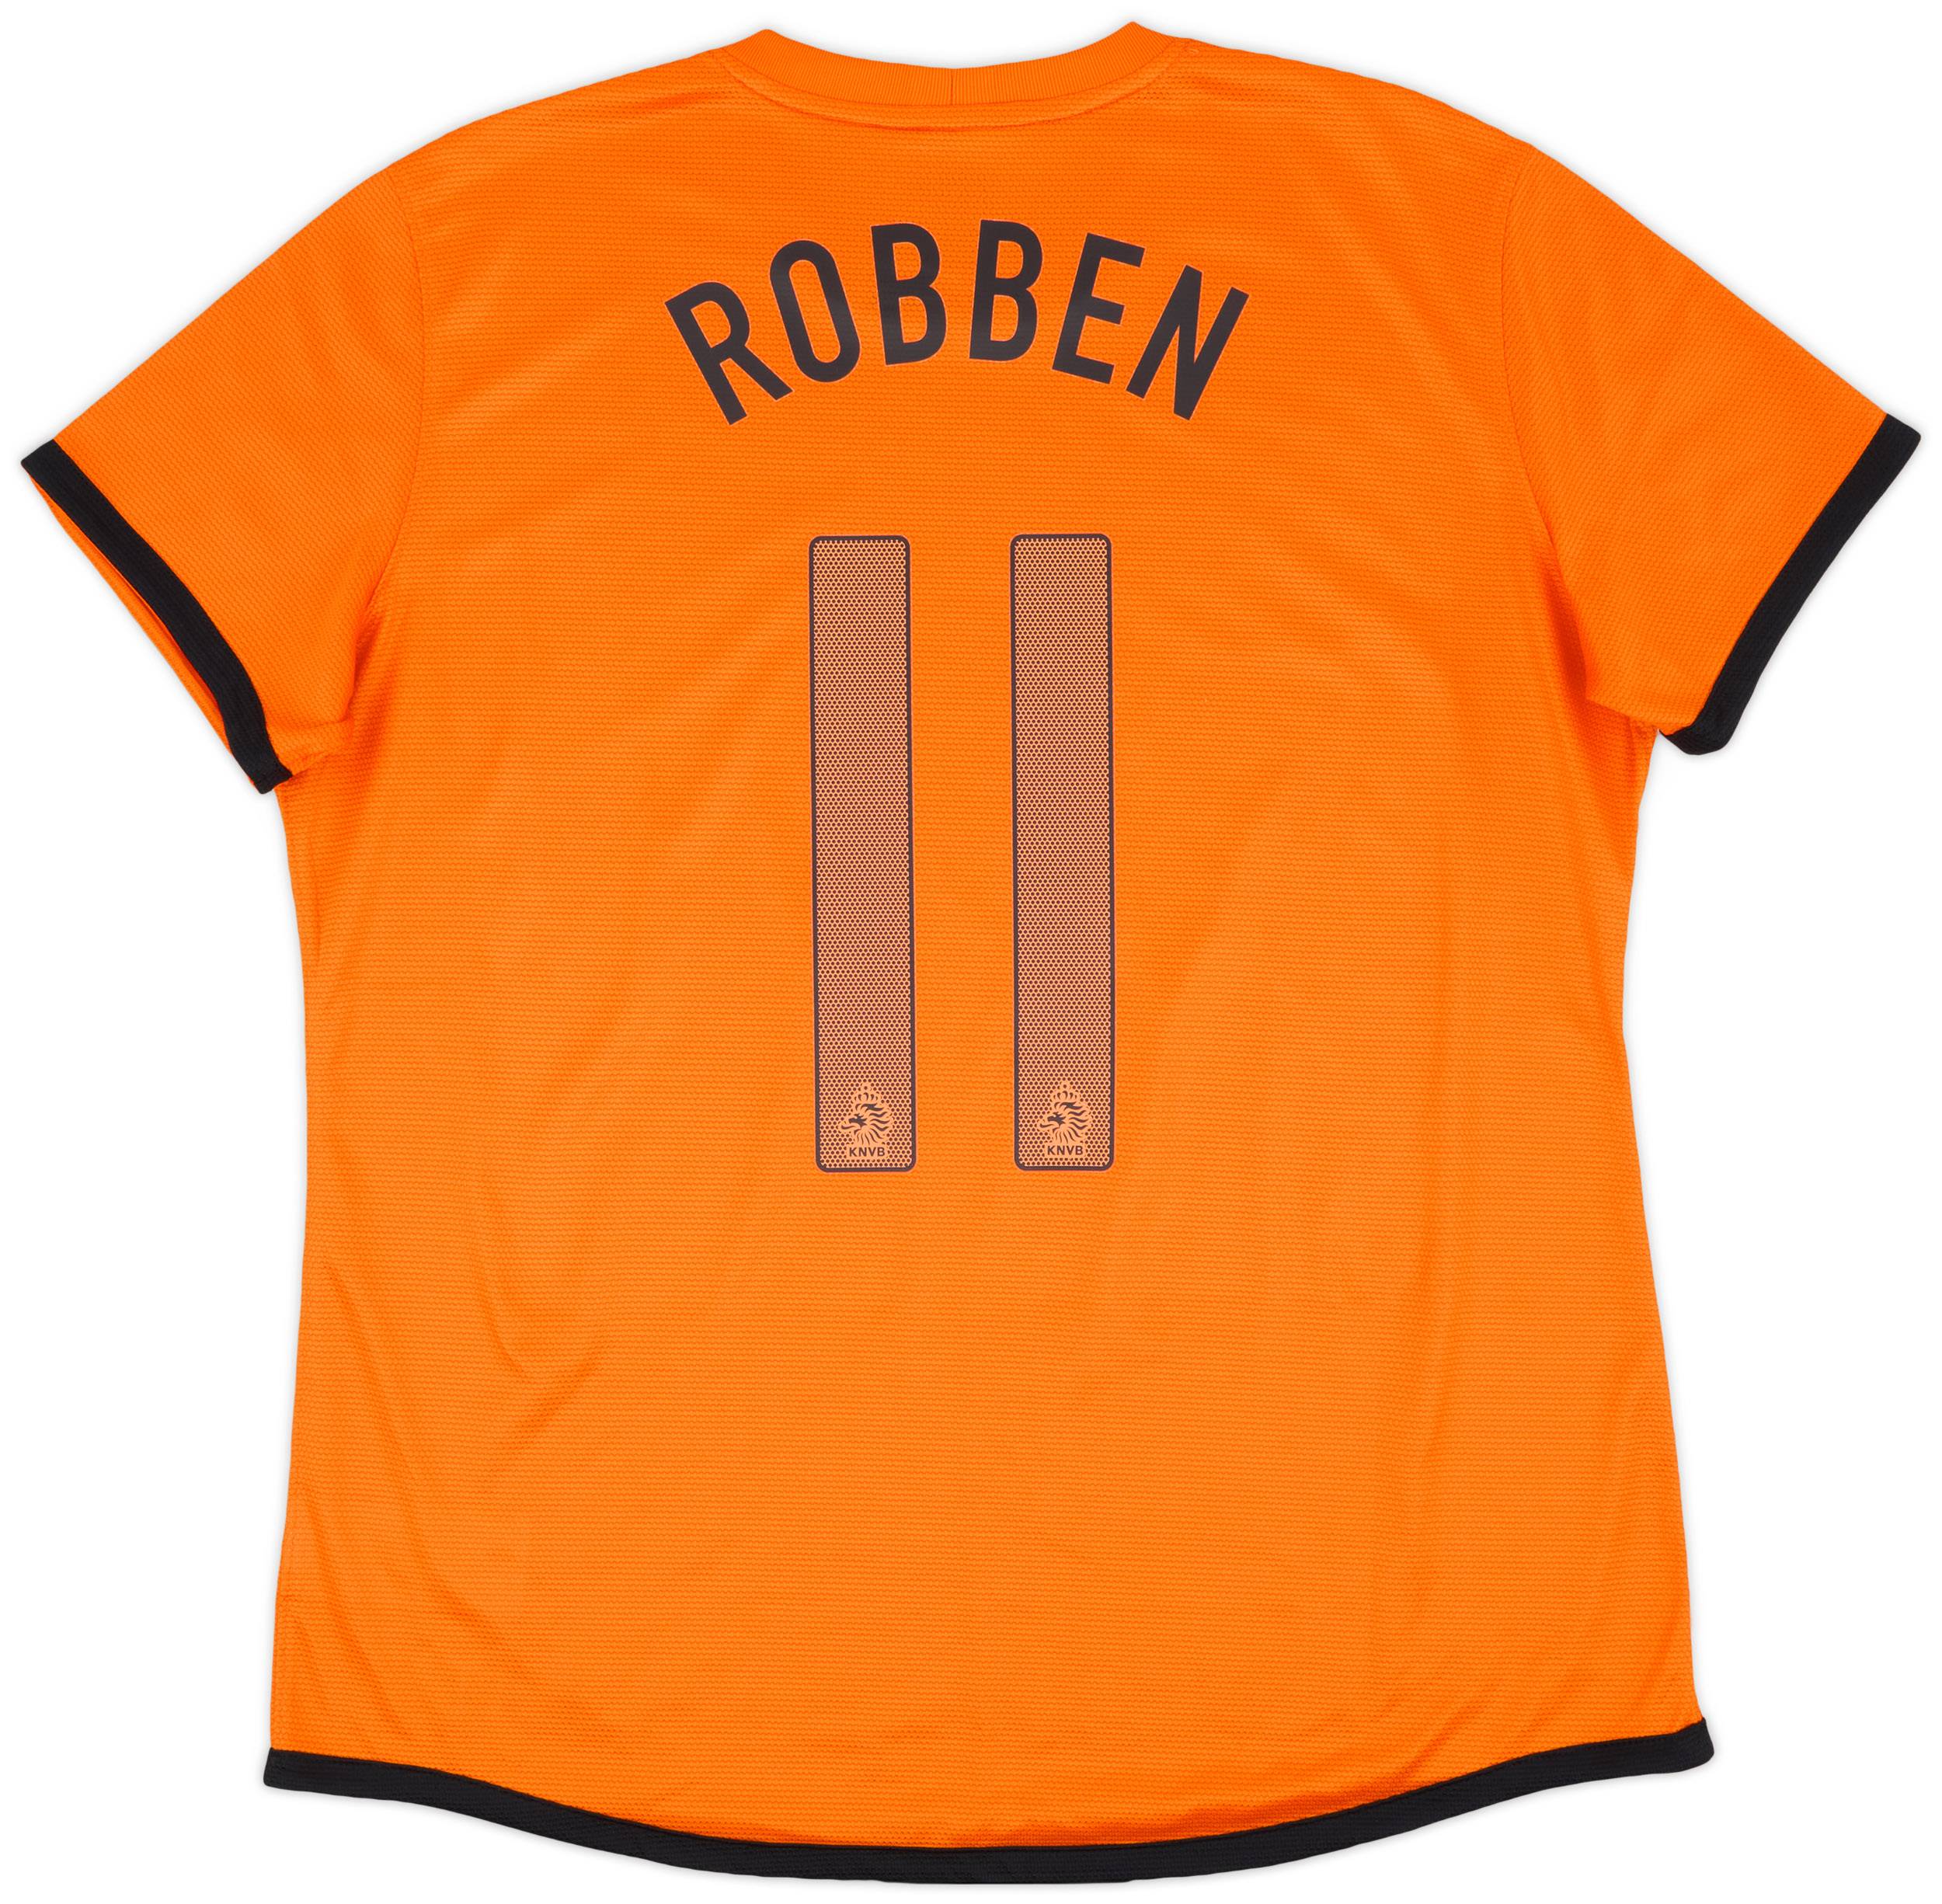 2012-13 Netherlands Home Shirt Robben #11 - 9/10 - (Women's XL)